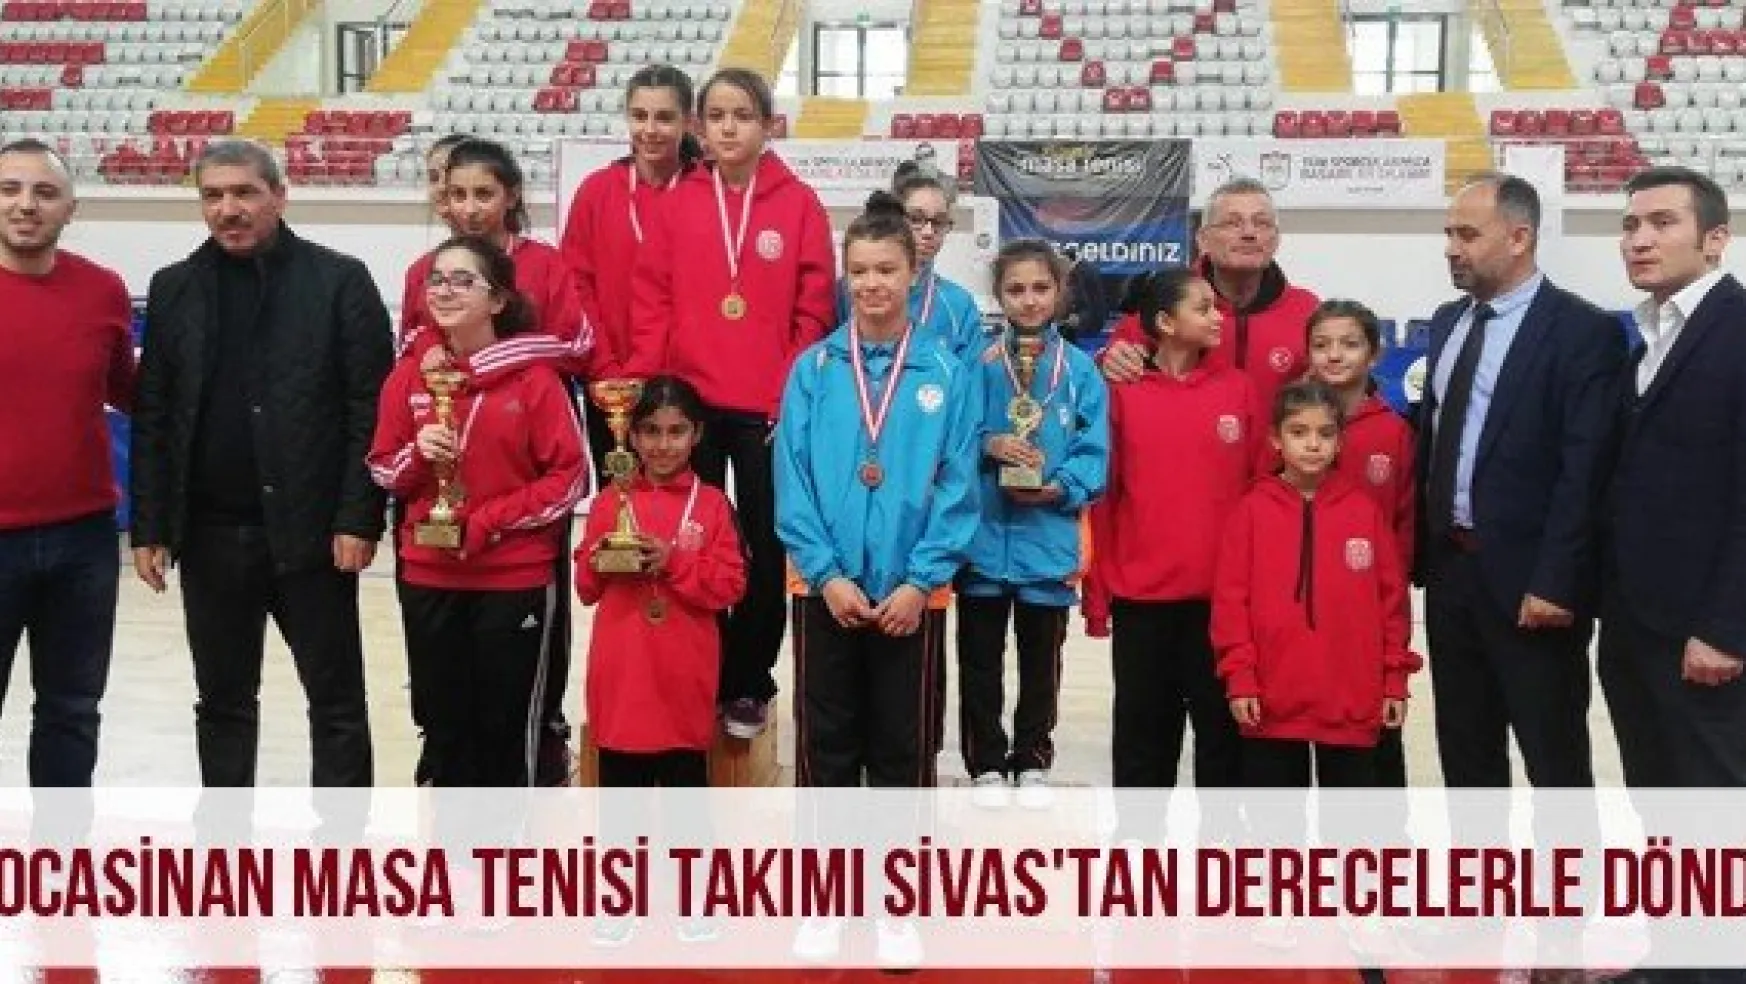 Kocasinan Masa Tenisi Takımı Sivas'tan Derecelerle Döndü